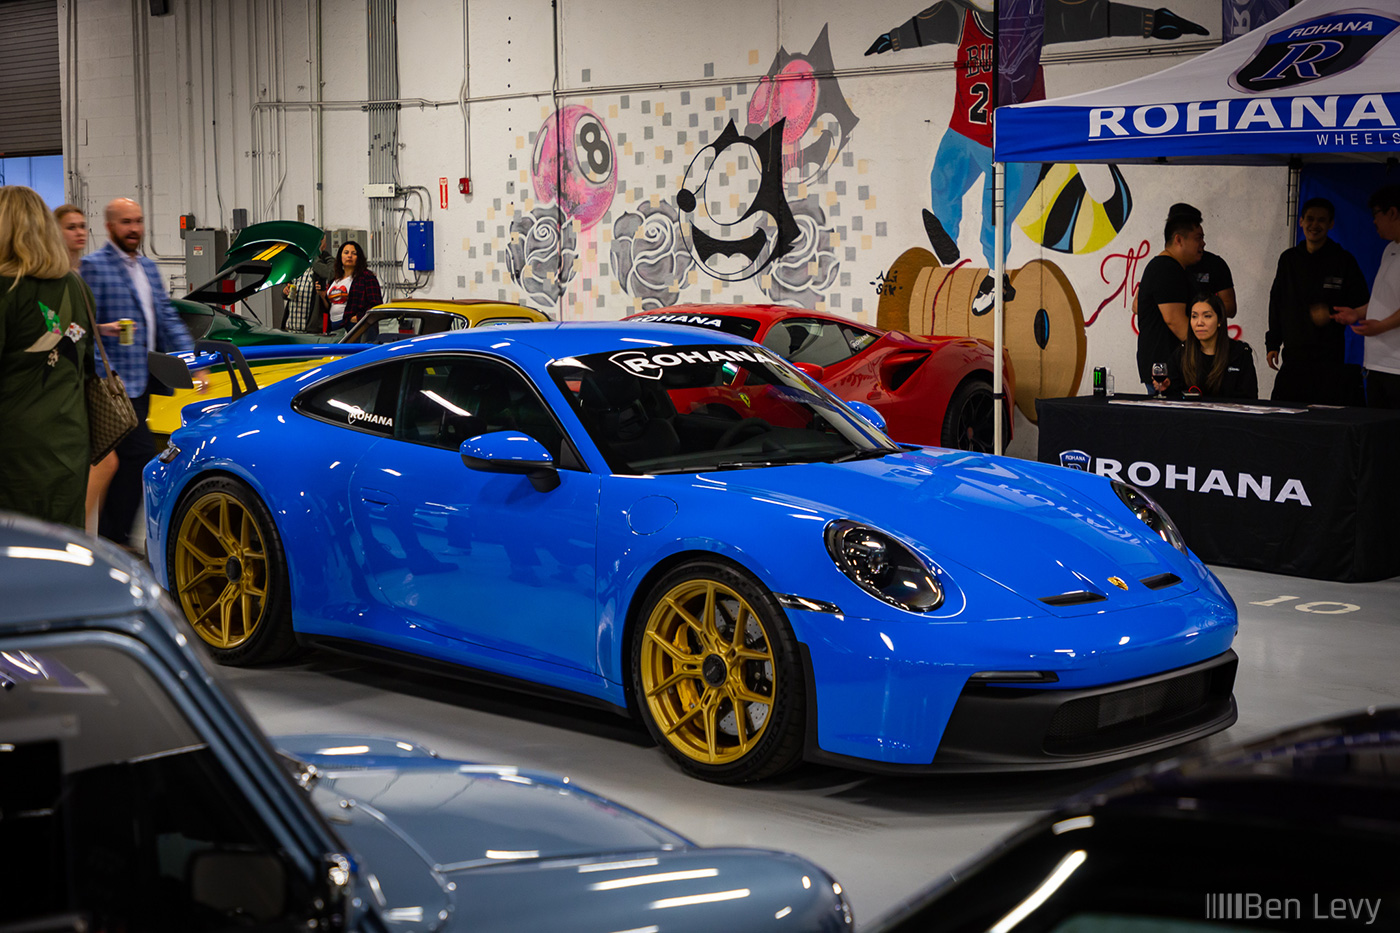 Blue Porsche GT3 on Gold Rohana Wheels